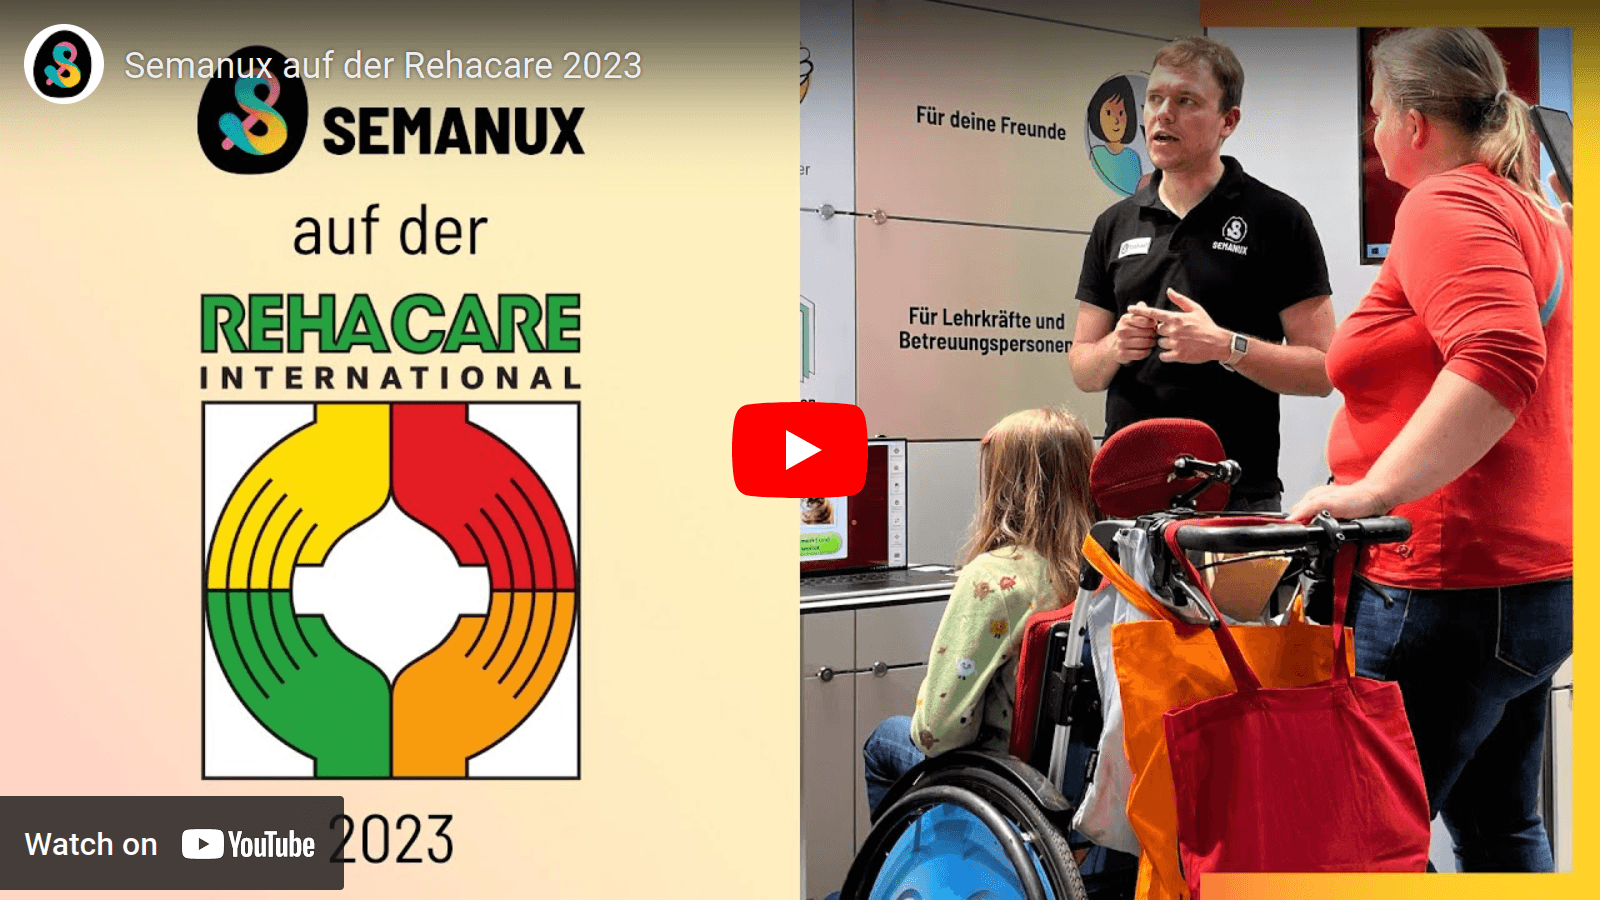 YouTube-Video „Semanux auf der Rehacare 2023“